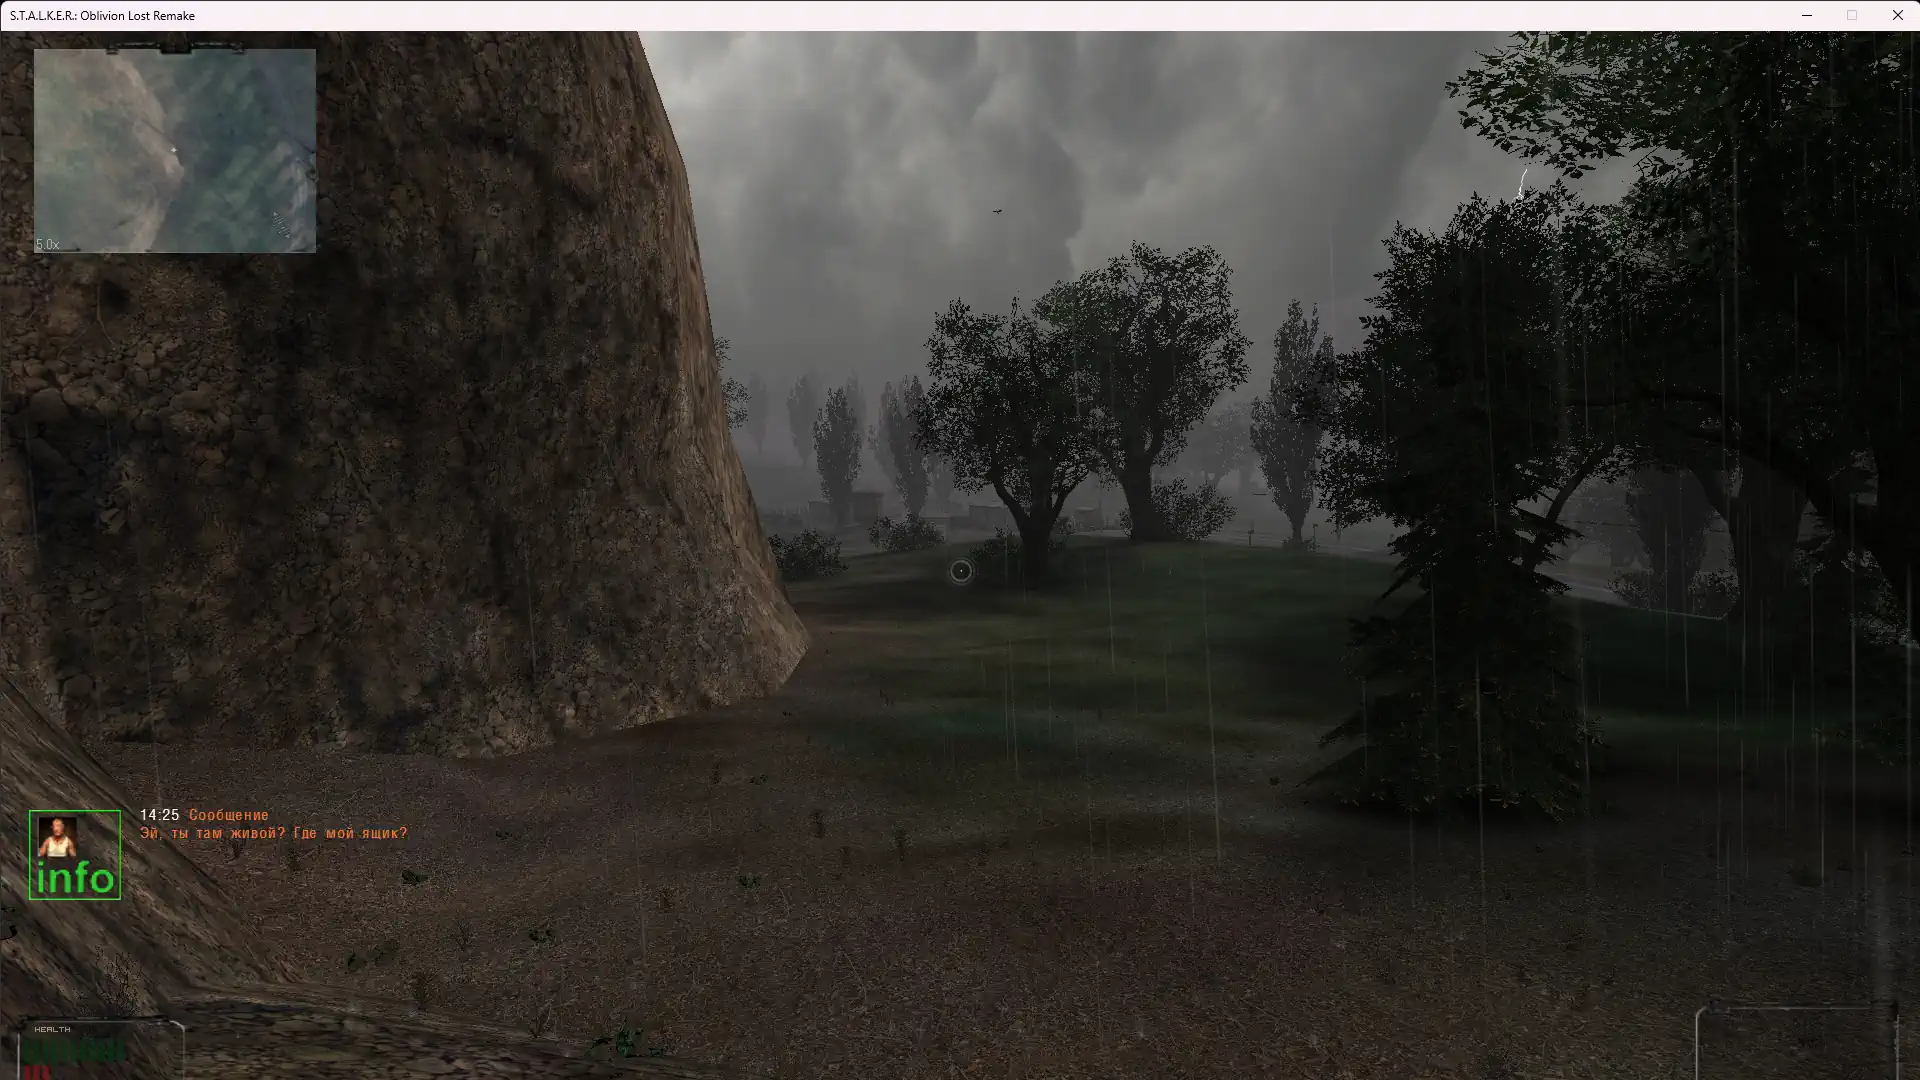 Stalker Oblivion Lost 3.0 screenshot.